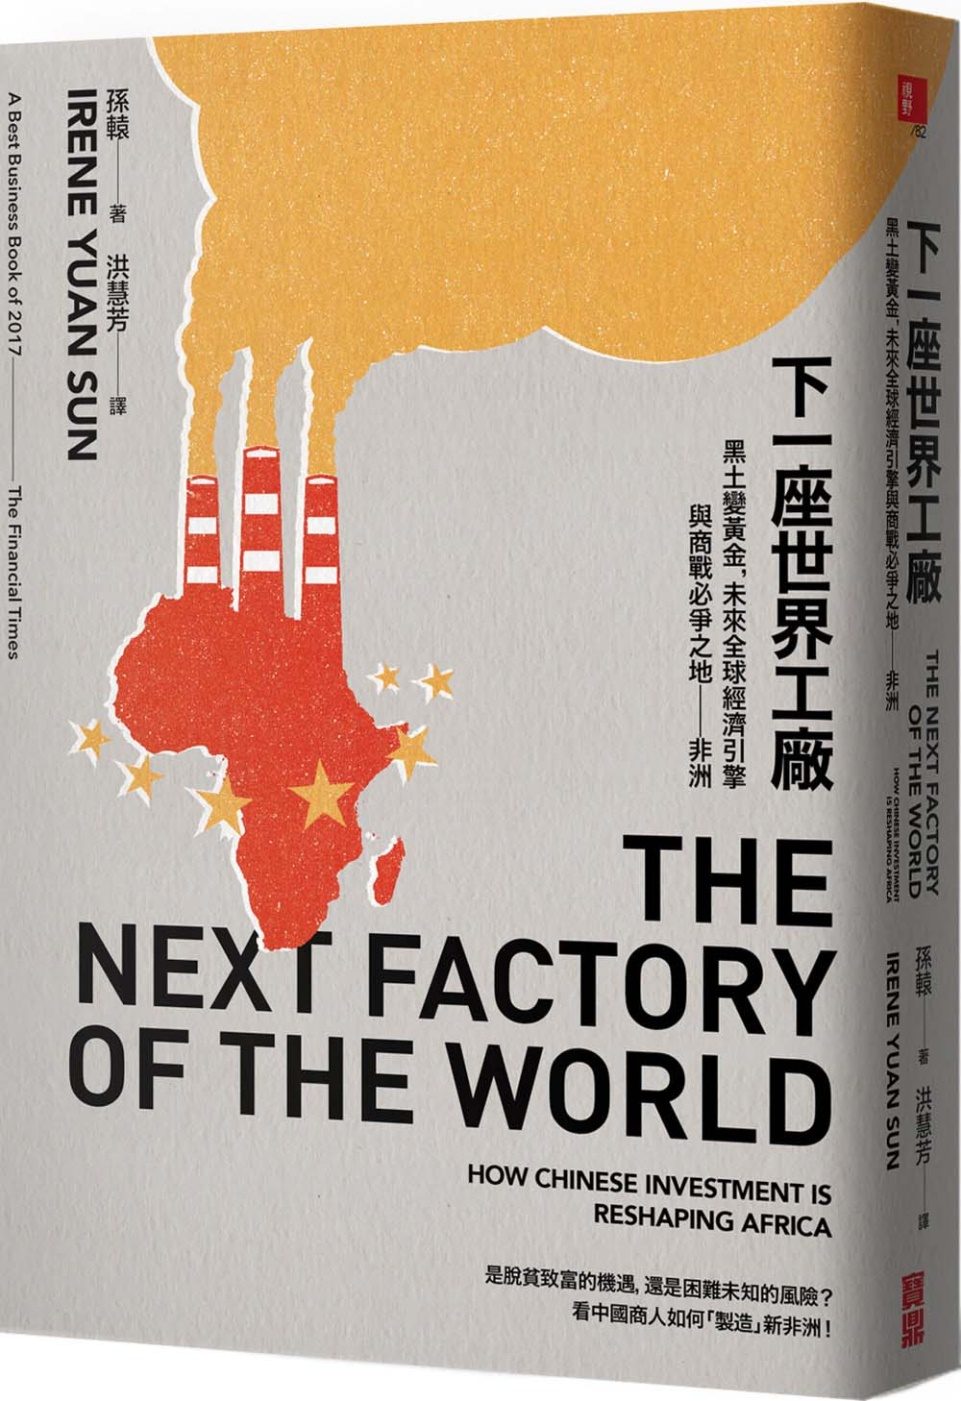 下一座世界工廠：黑土變黃金，未來全球經濟引擎與商戰必爭之地